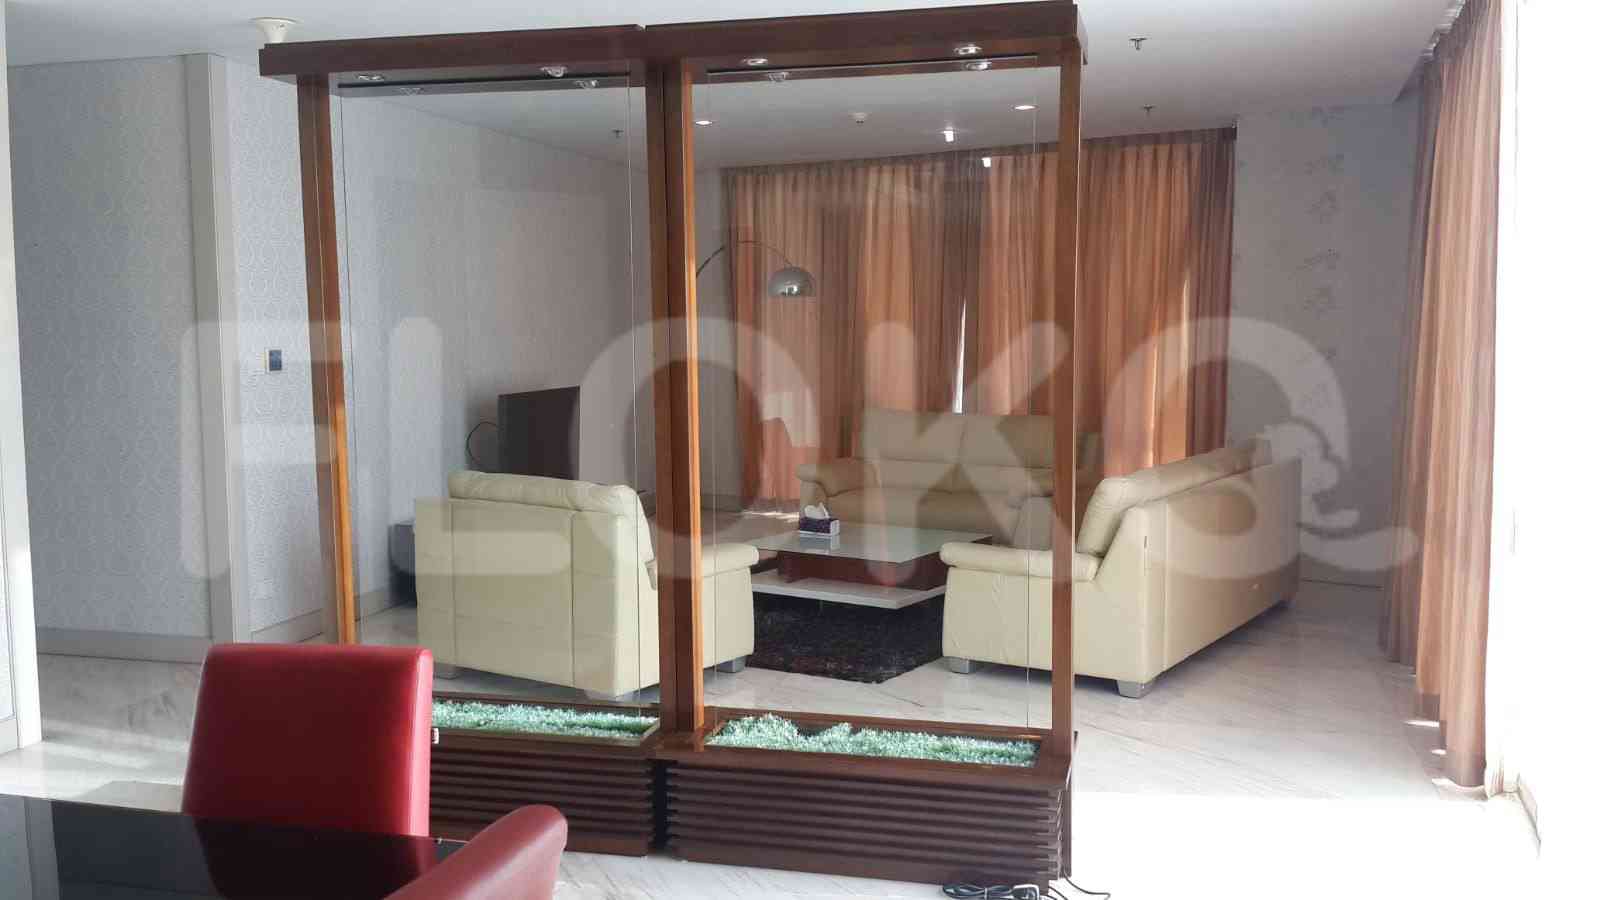 4 Bedroom on 18th Floor for Rent in Regatta - fplf24 5